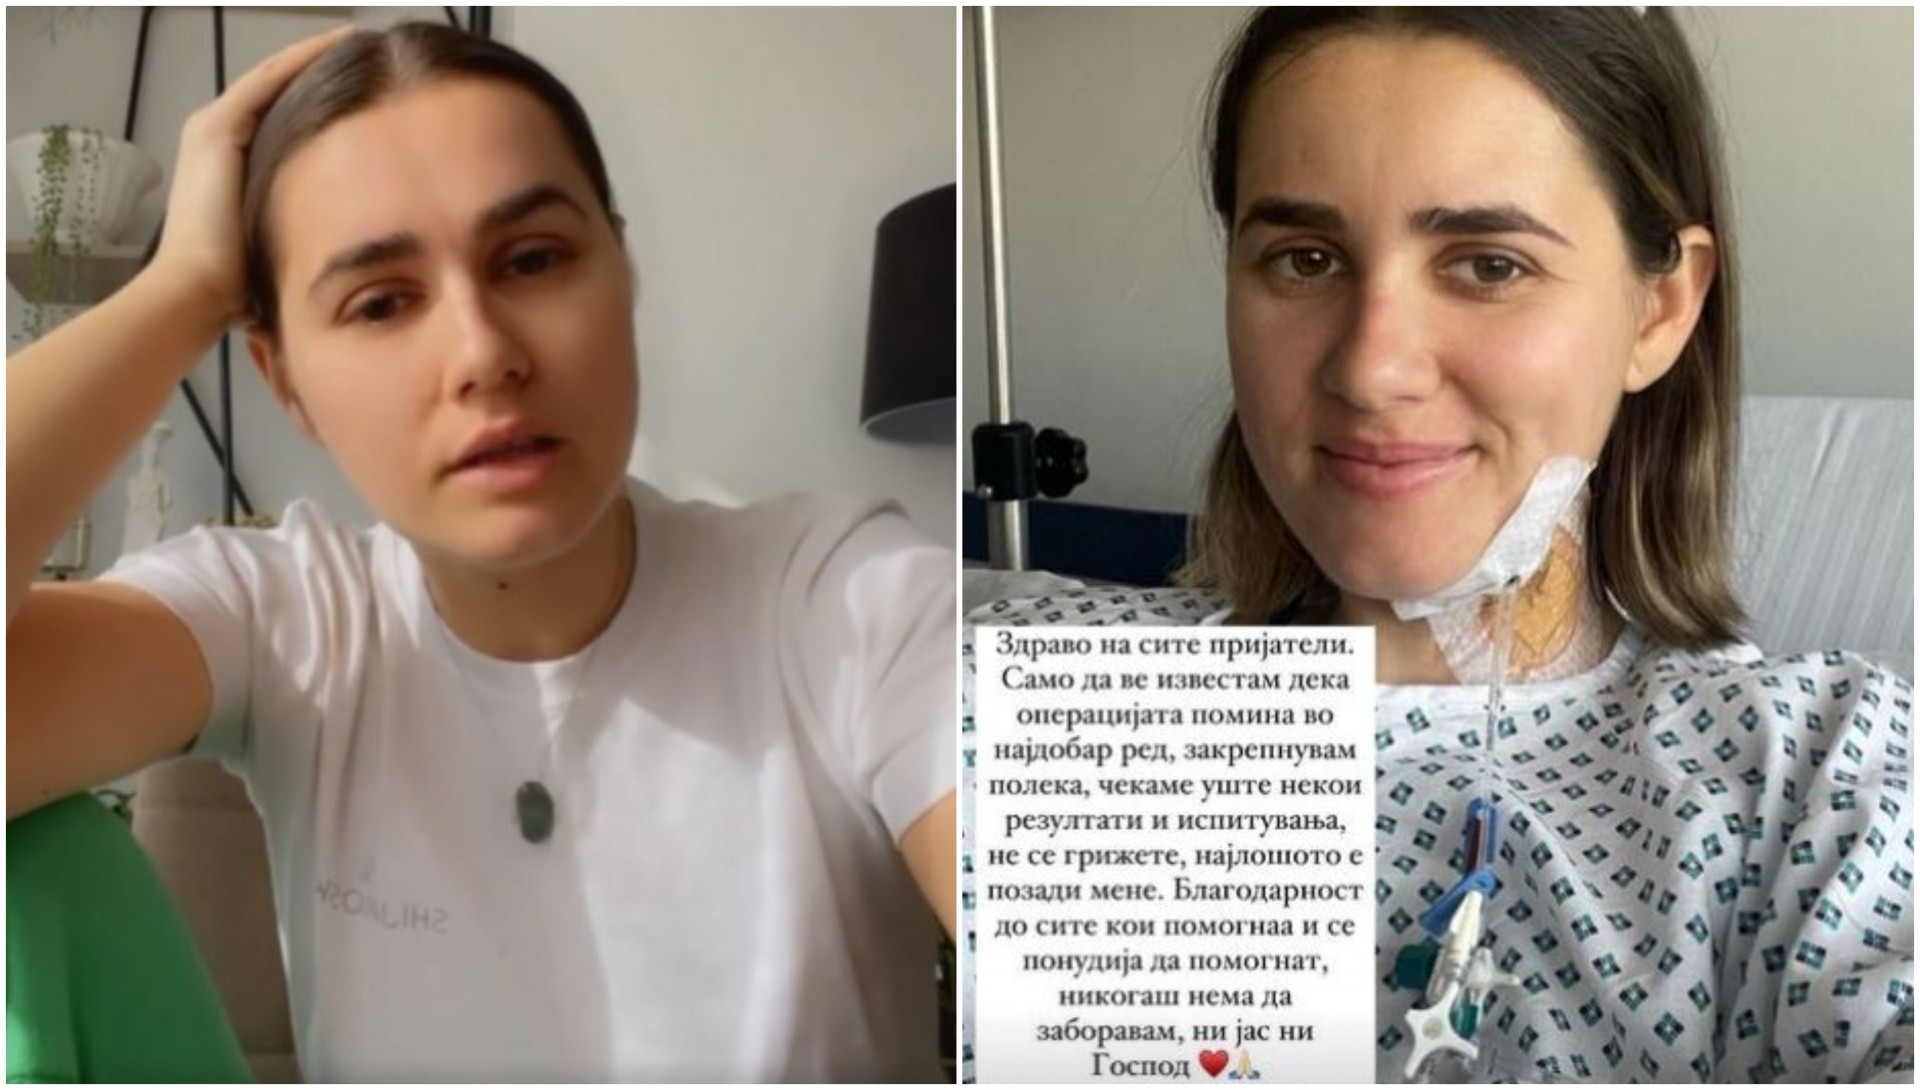 Убедена сум дека сѐ се случува со причина: Александра Шијакоска откри дека операцијата на тумор на главата поминала успешно (ФОТО)